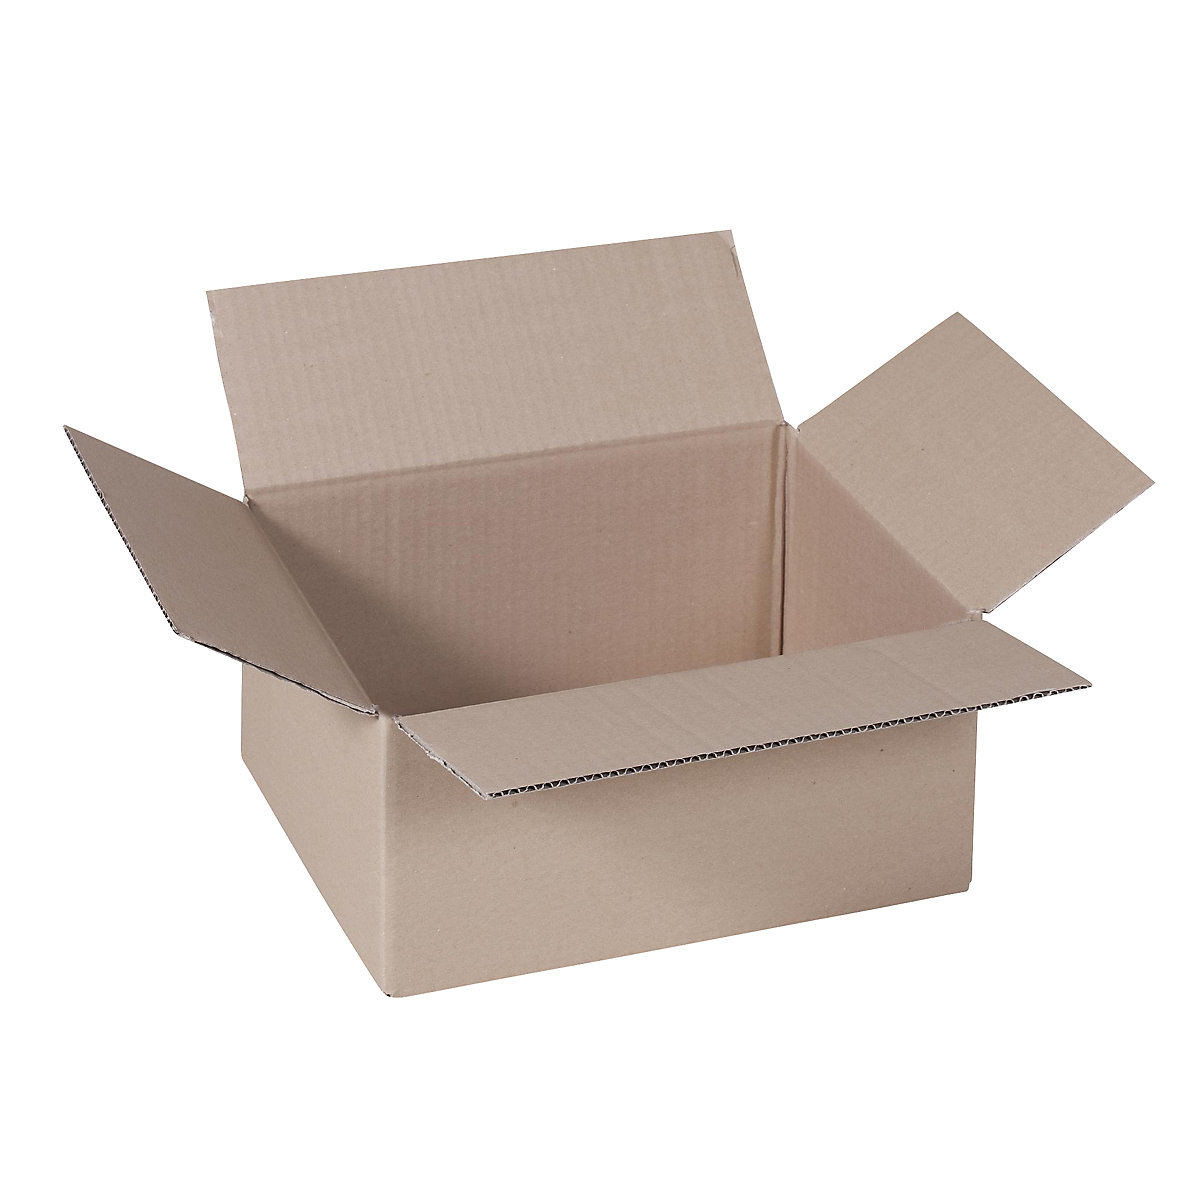 Sklopiva kartonska kutija, FEFCO 0201, od 1-valnog kartona, unutarnje dimenzije 305 x 215 x 140 mm, pak. 50 kom.-4